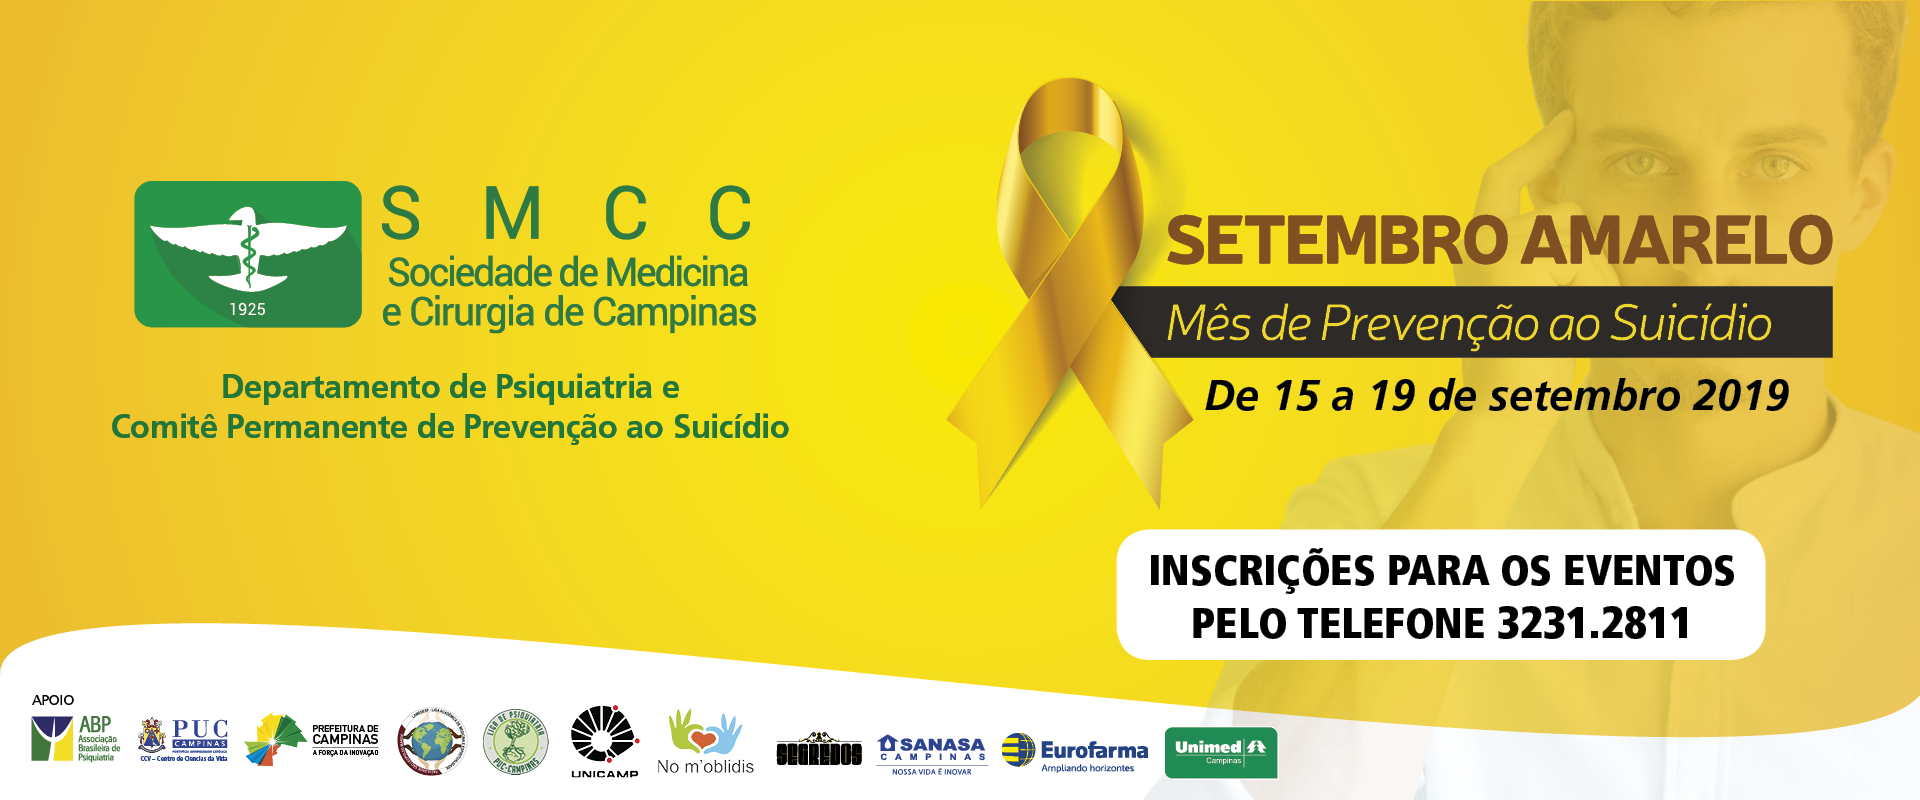 SMCC lança programação para Setembro Amarelo de prevenção ao suicídio